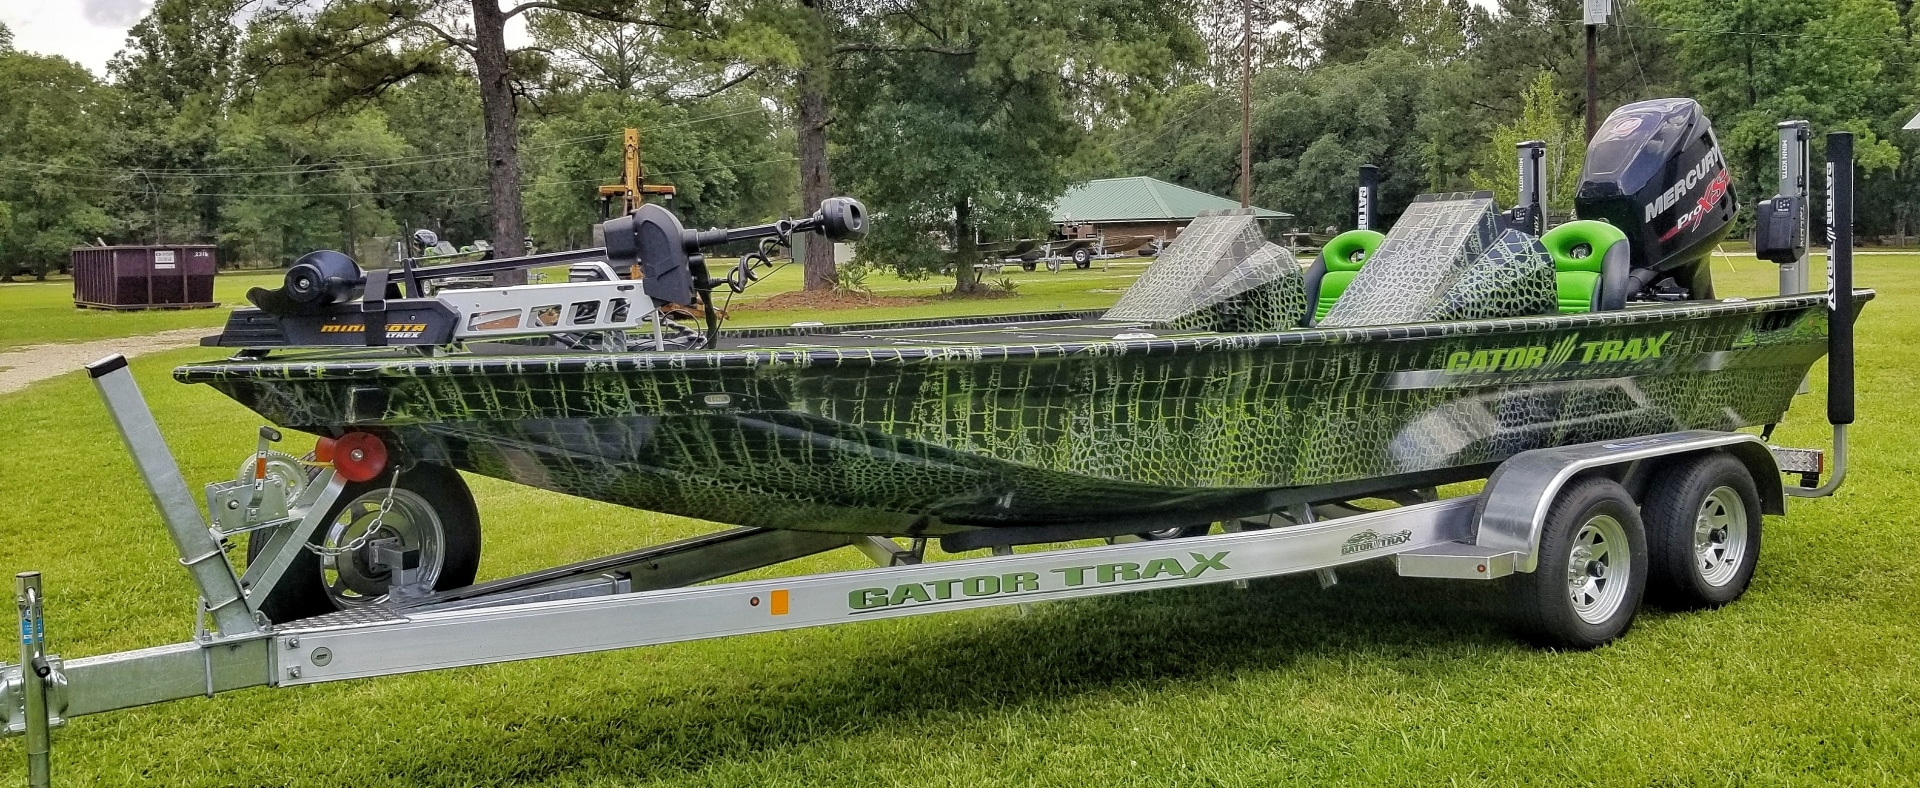 Strike Series Bass Boats  Gator Trax Boats